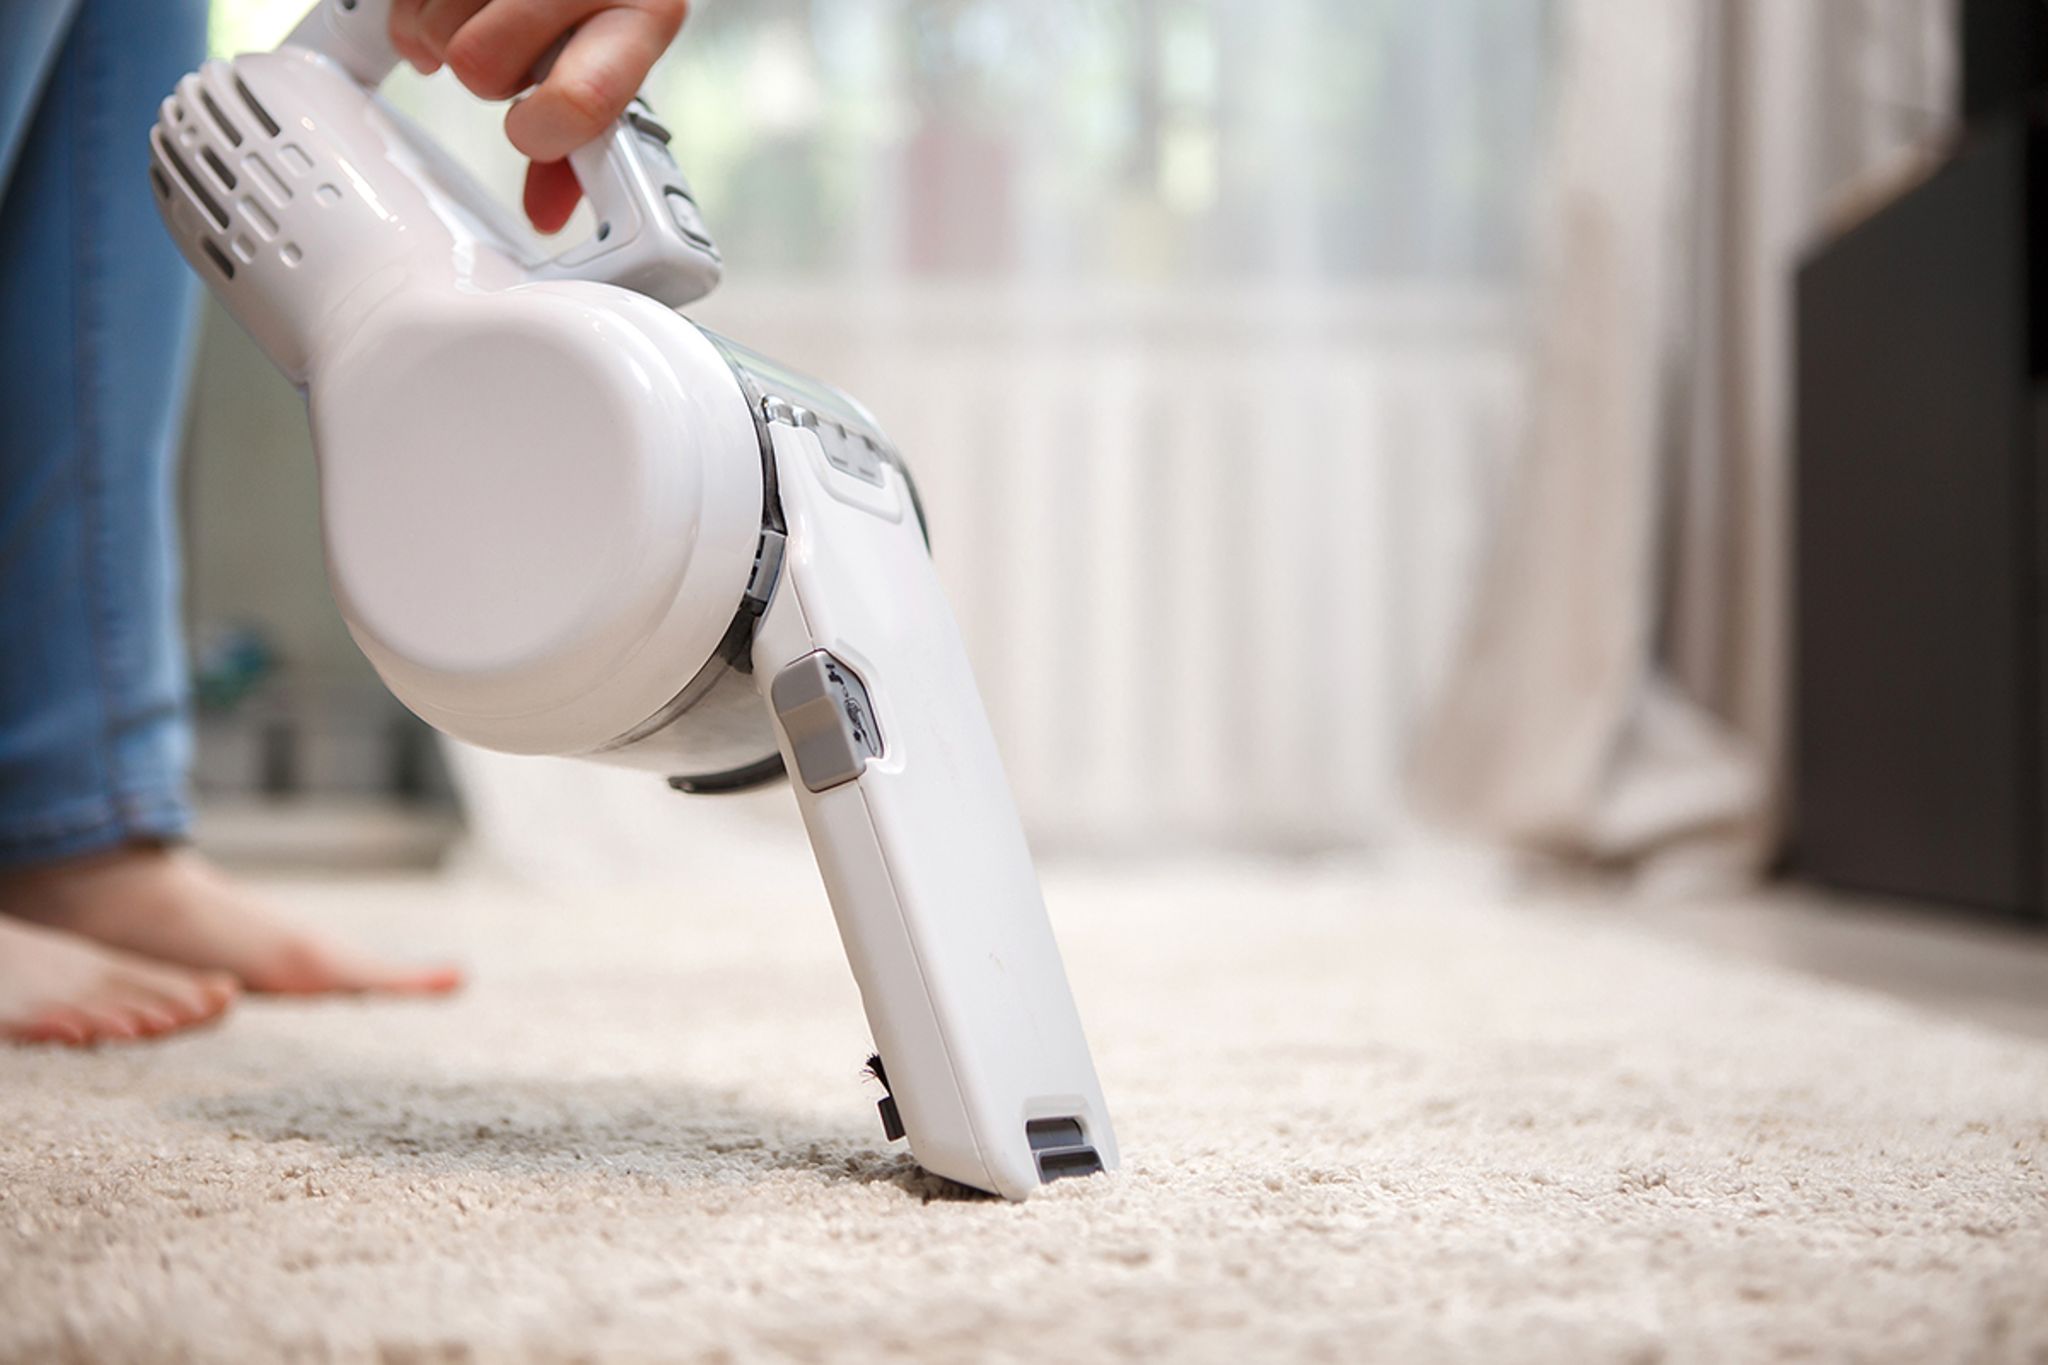 Teppich reinigen – die besten Hausmittel & Tipps - [SCHÖNER WOHNEN]